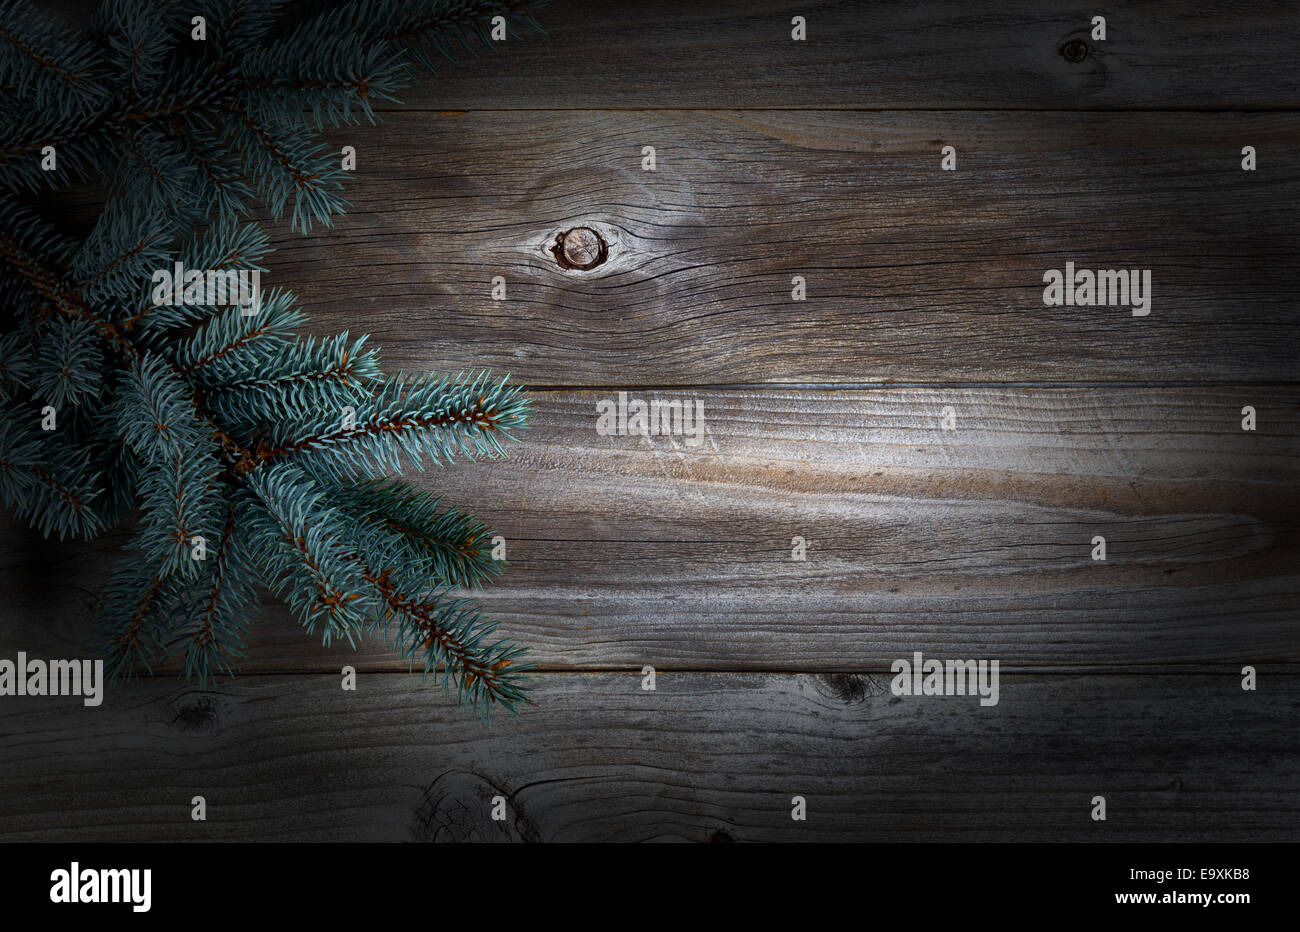 La Direction générale de l'arbre de Noël en bois rustique avec des conseils sur la vignette Banque D'Images